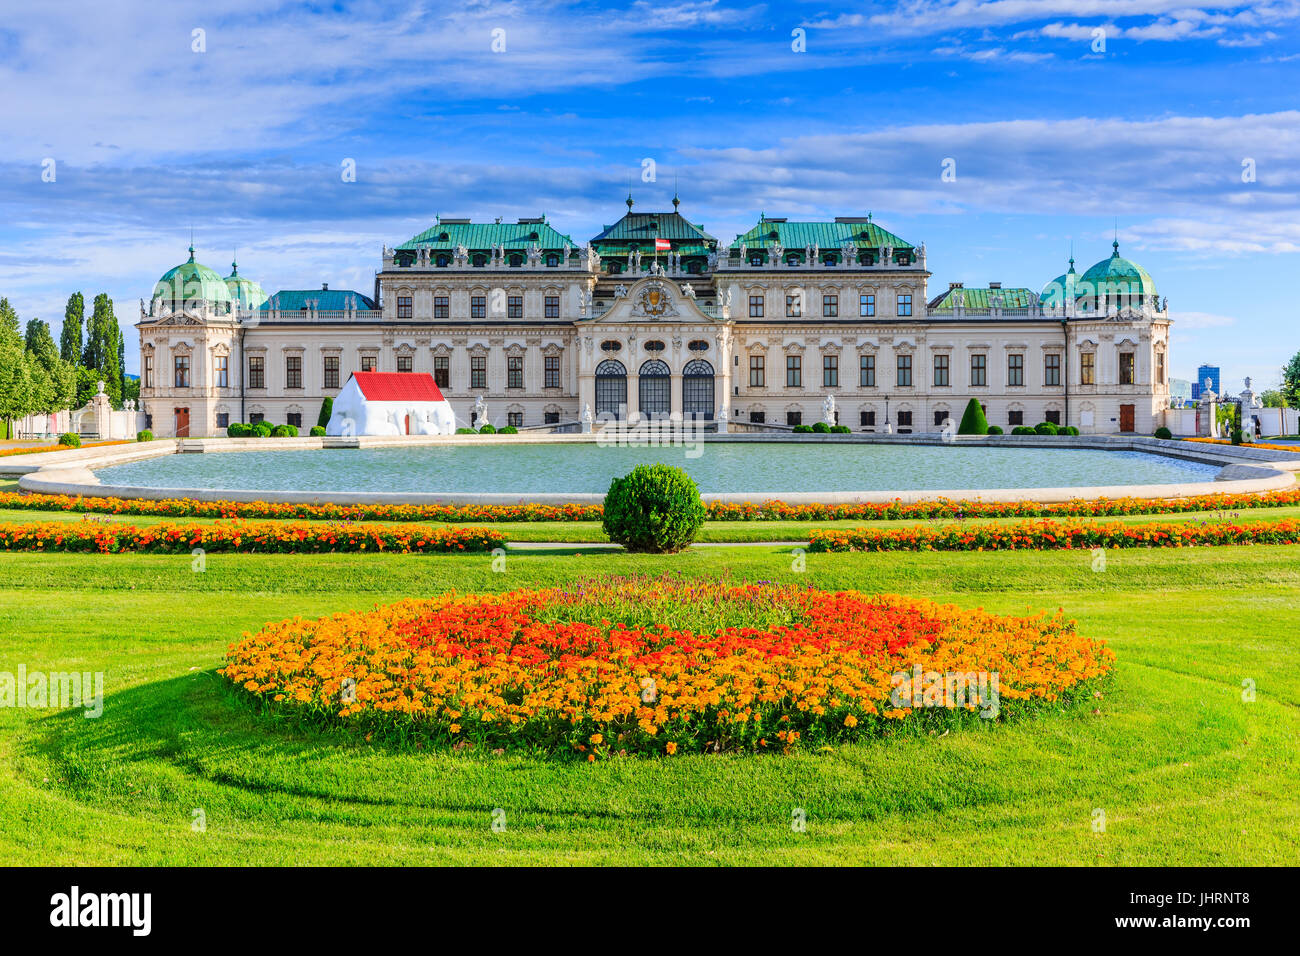 Vienna, Austria. Upper Belvedere Palace and garden. Stock Photo